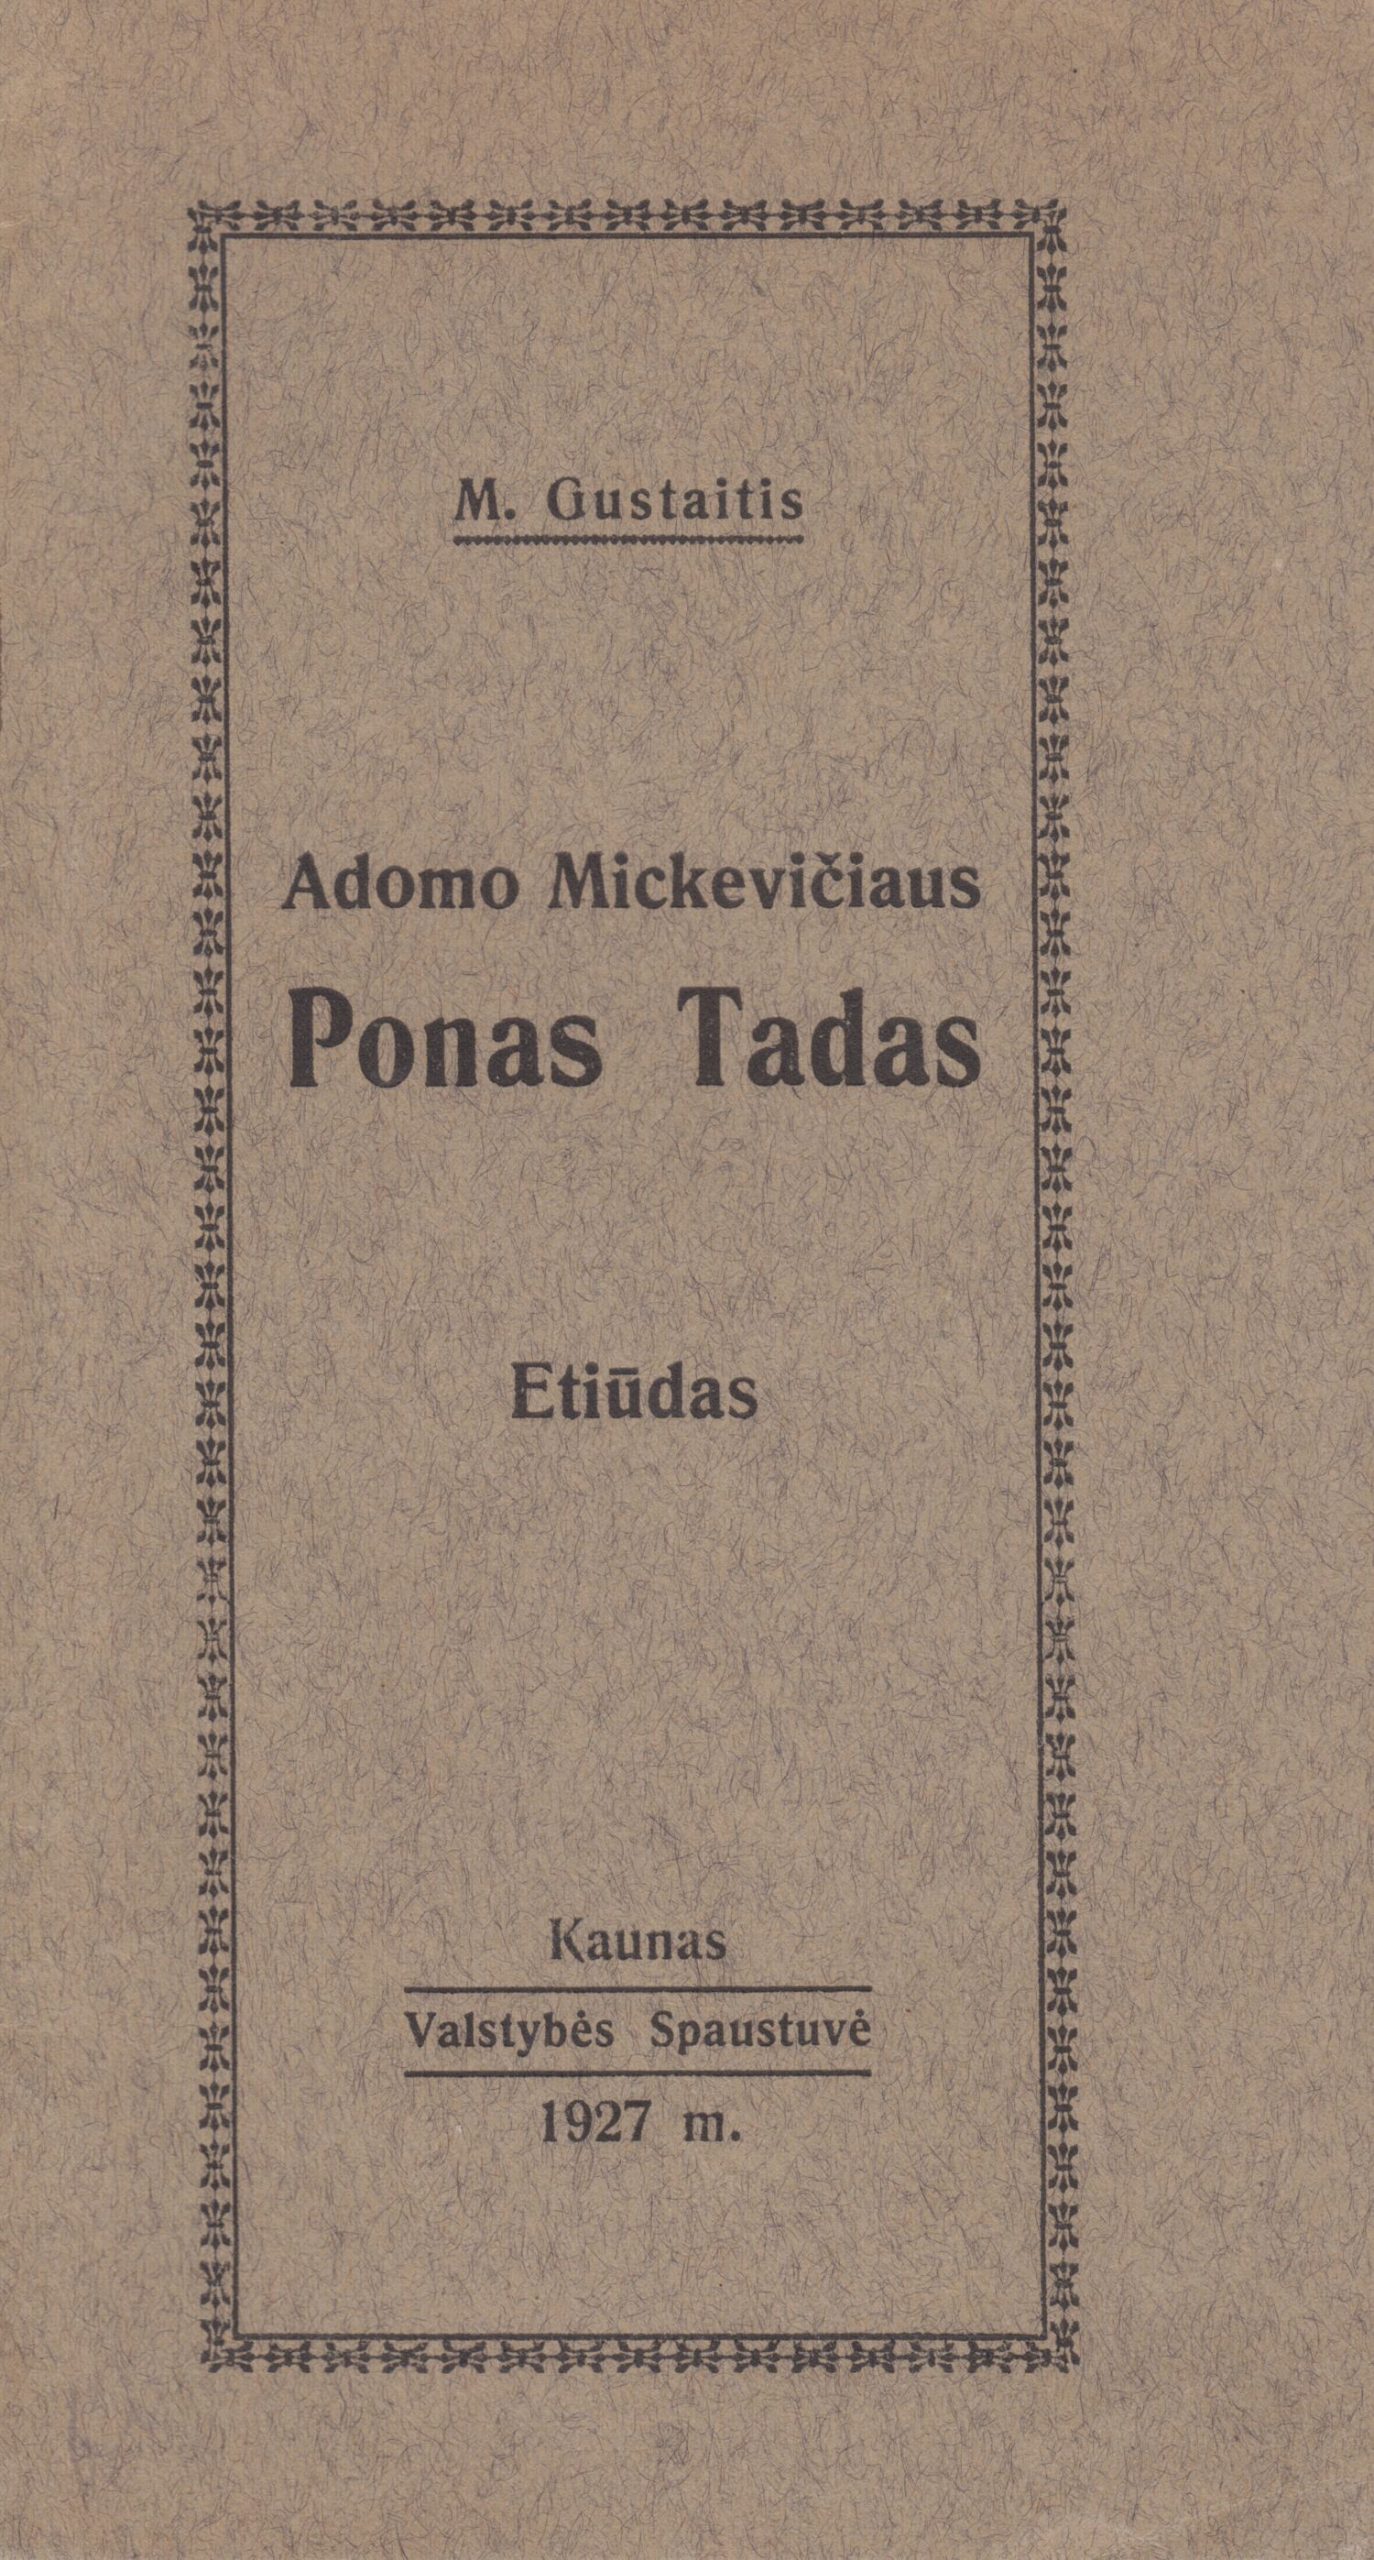 Motiejus Gustaitis. Adomo Mickevičiaus „Ponas Tadas“. Etiudas. Kaunas: Valstybės spaustuvė, 1927. MLLM 1697